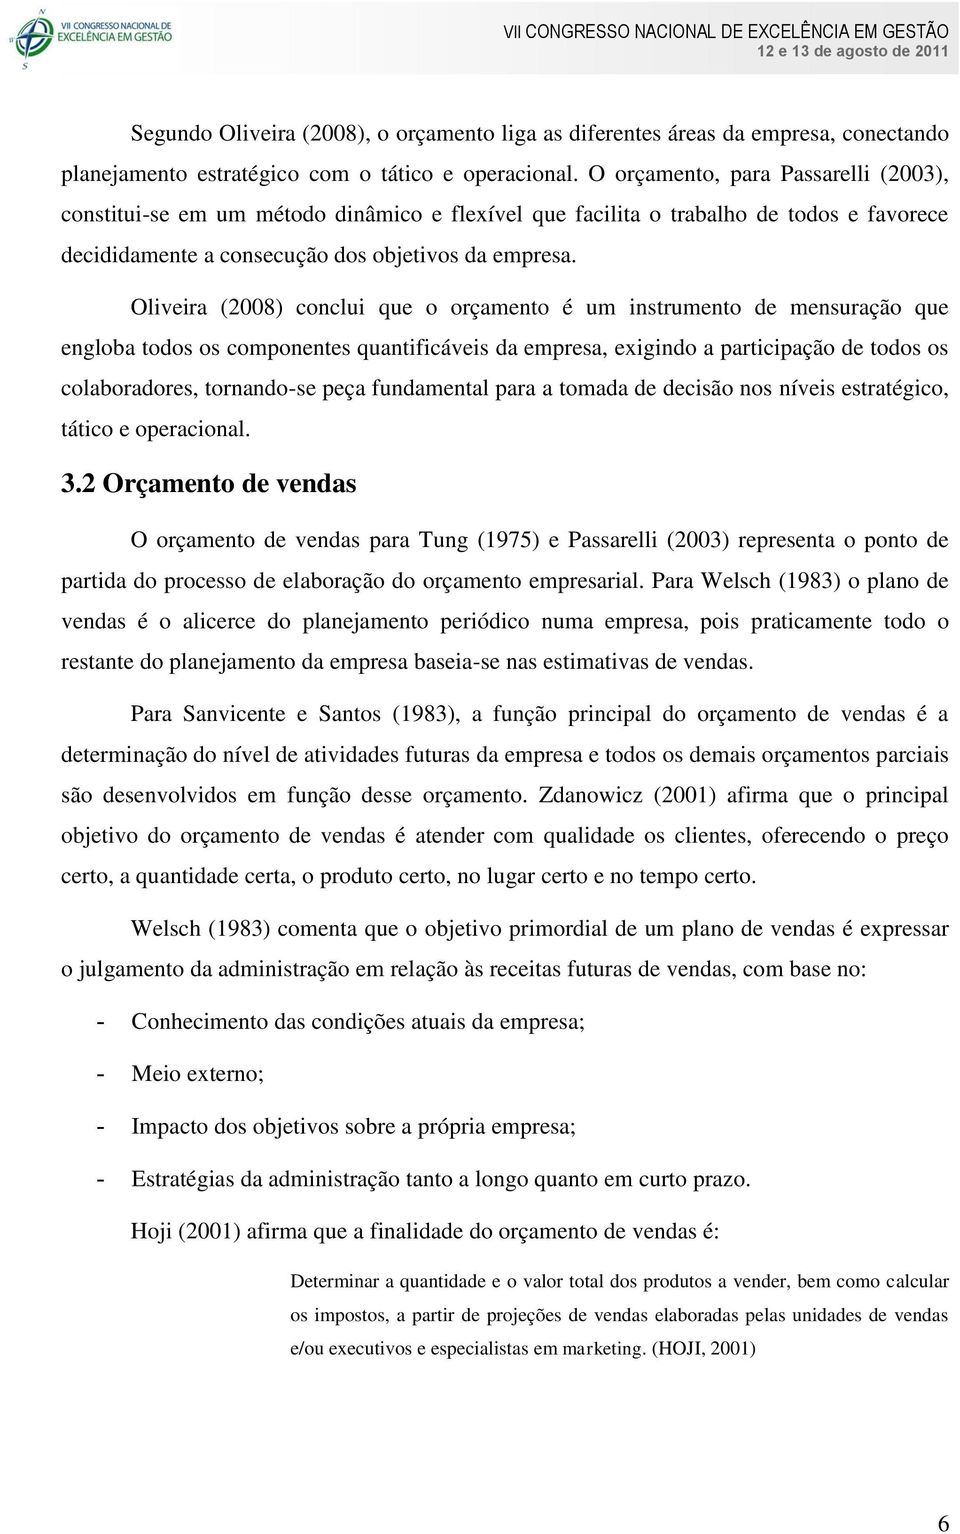 Oliveira (2008) conclui que o orçamento é um instrumento de mensuração que engloba todos os componentes quantificáveis da empresa, exigindo a participação de todos os colaboradores, tornando-se peça